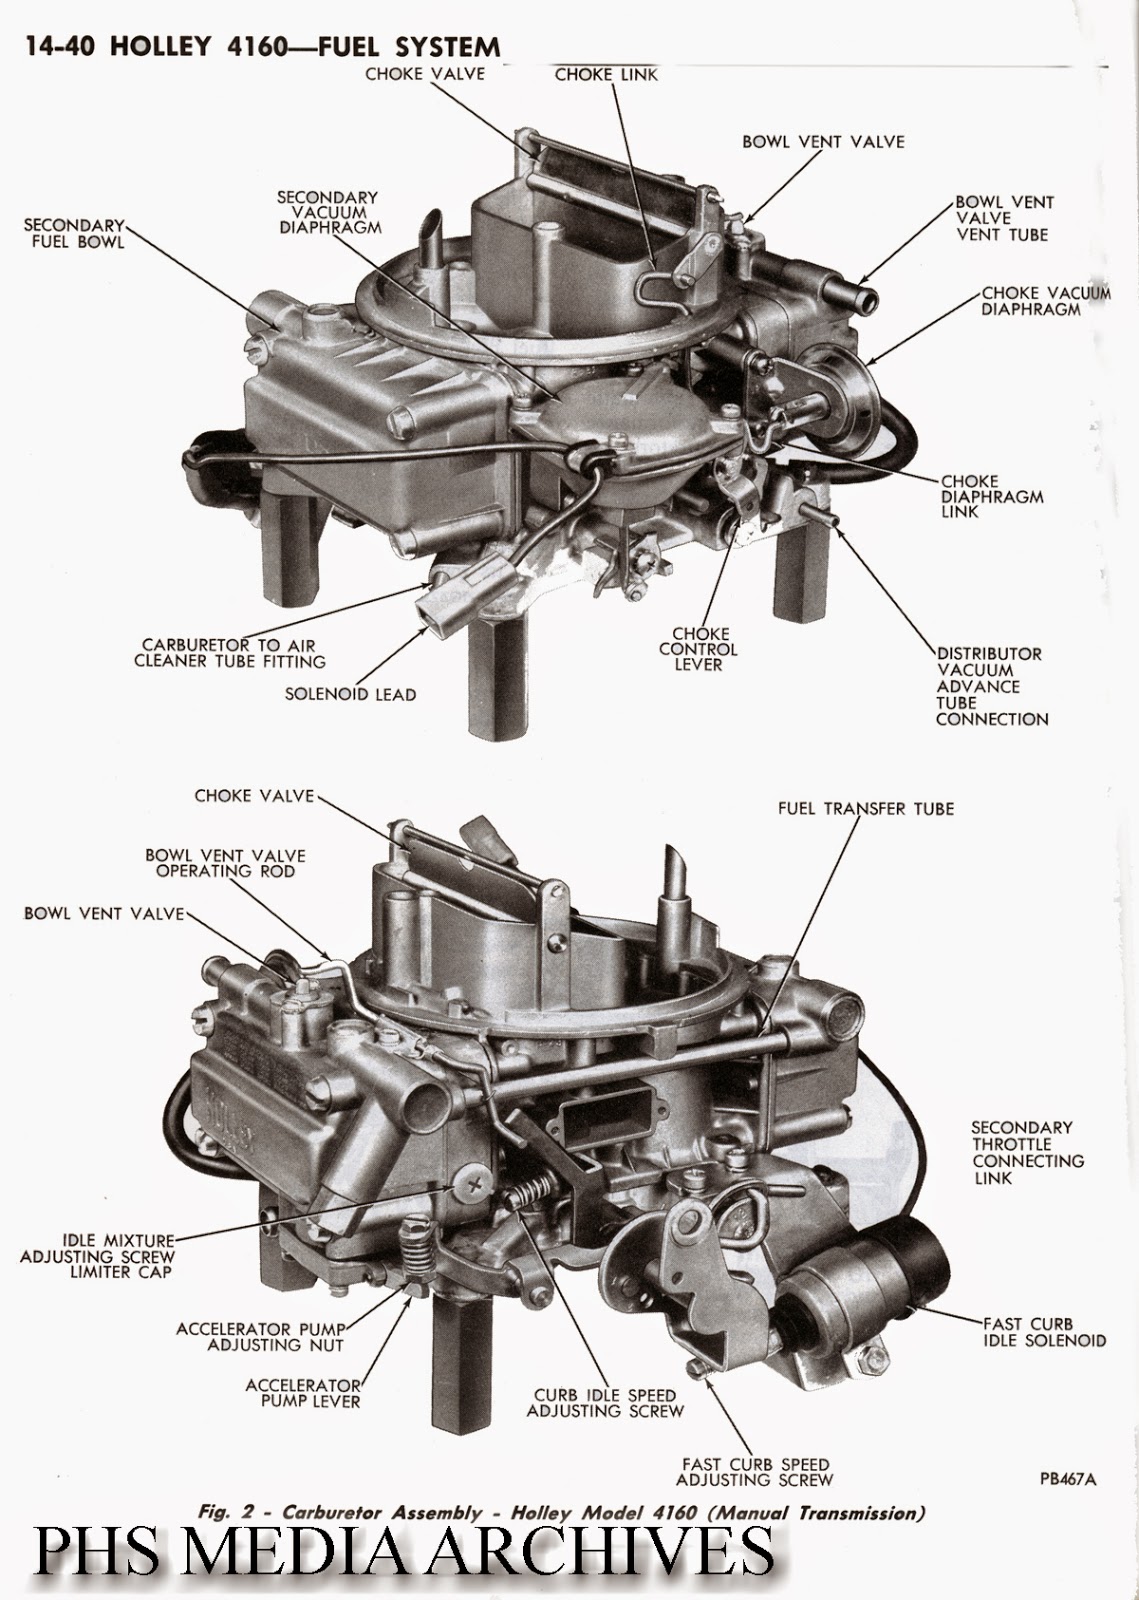 Holley 600 Cfm Carburetor Adjustment